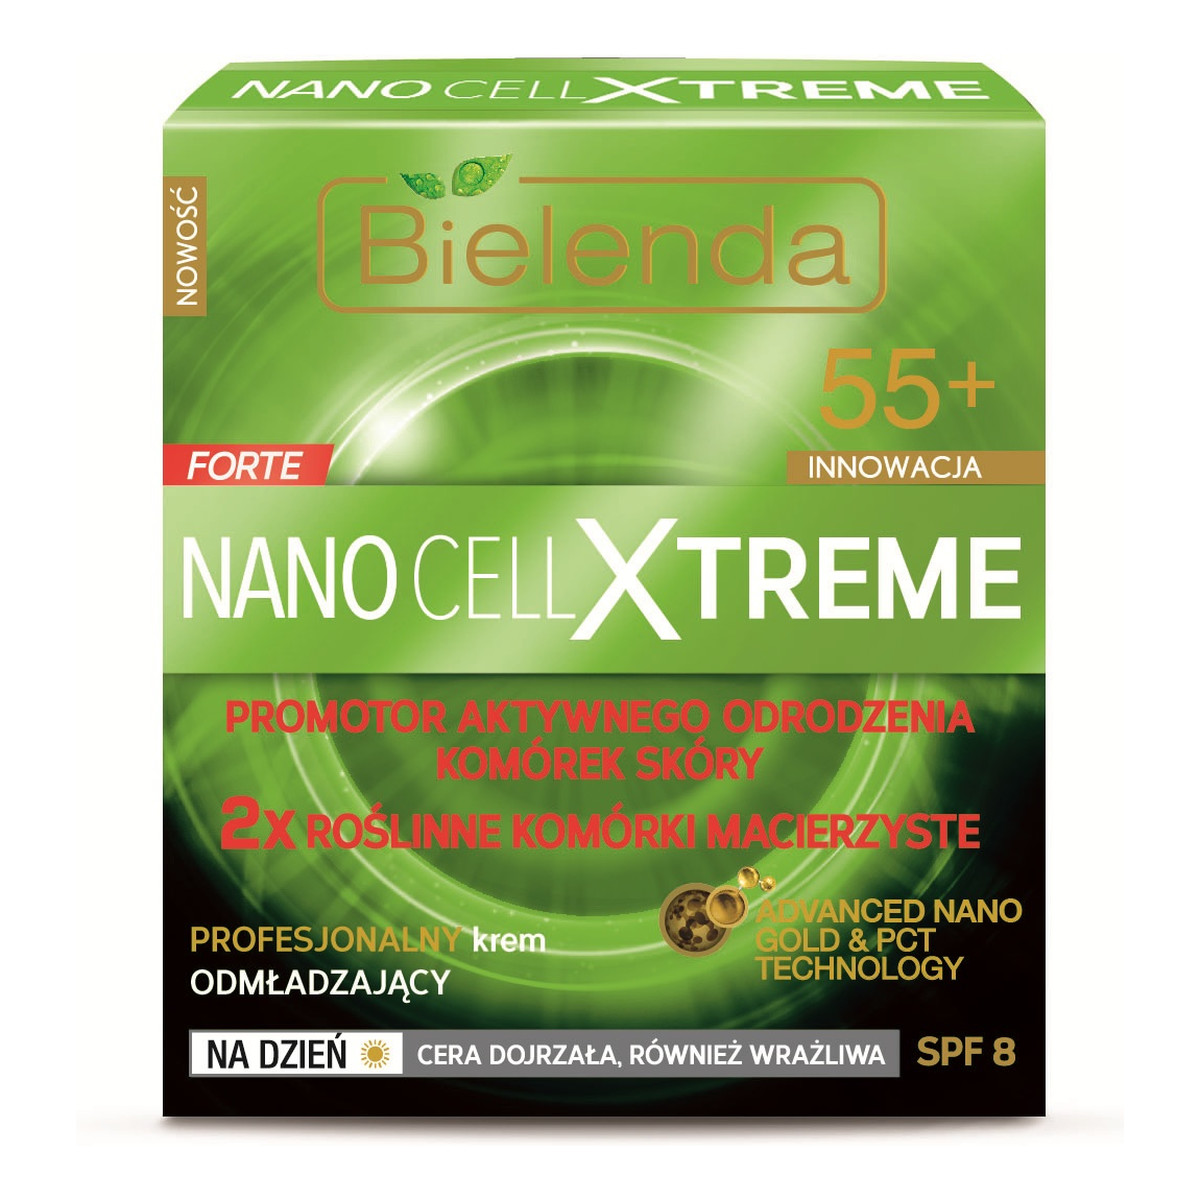 Bielenda Forte Nano Cell Xtreme 55+ Profesjonalny Krem Odmładzający Na Dzień SPF 8 50ml